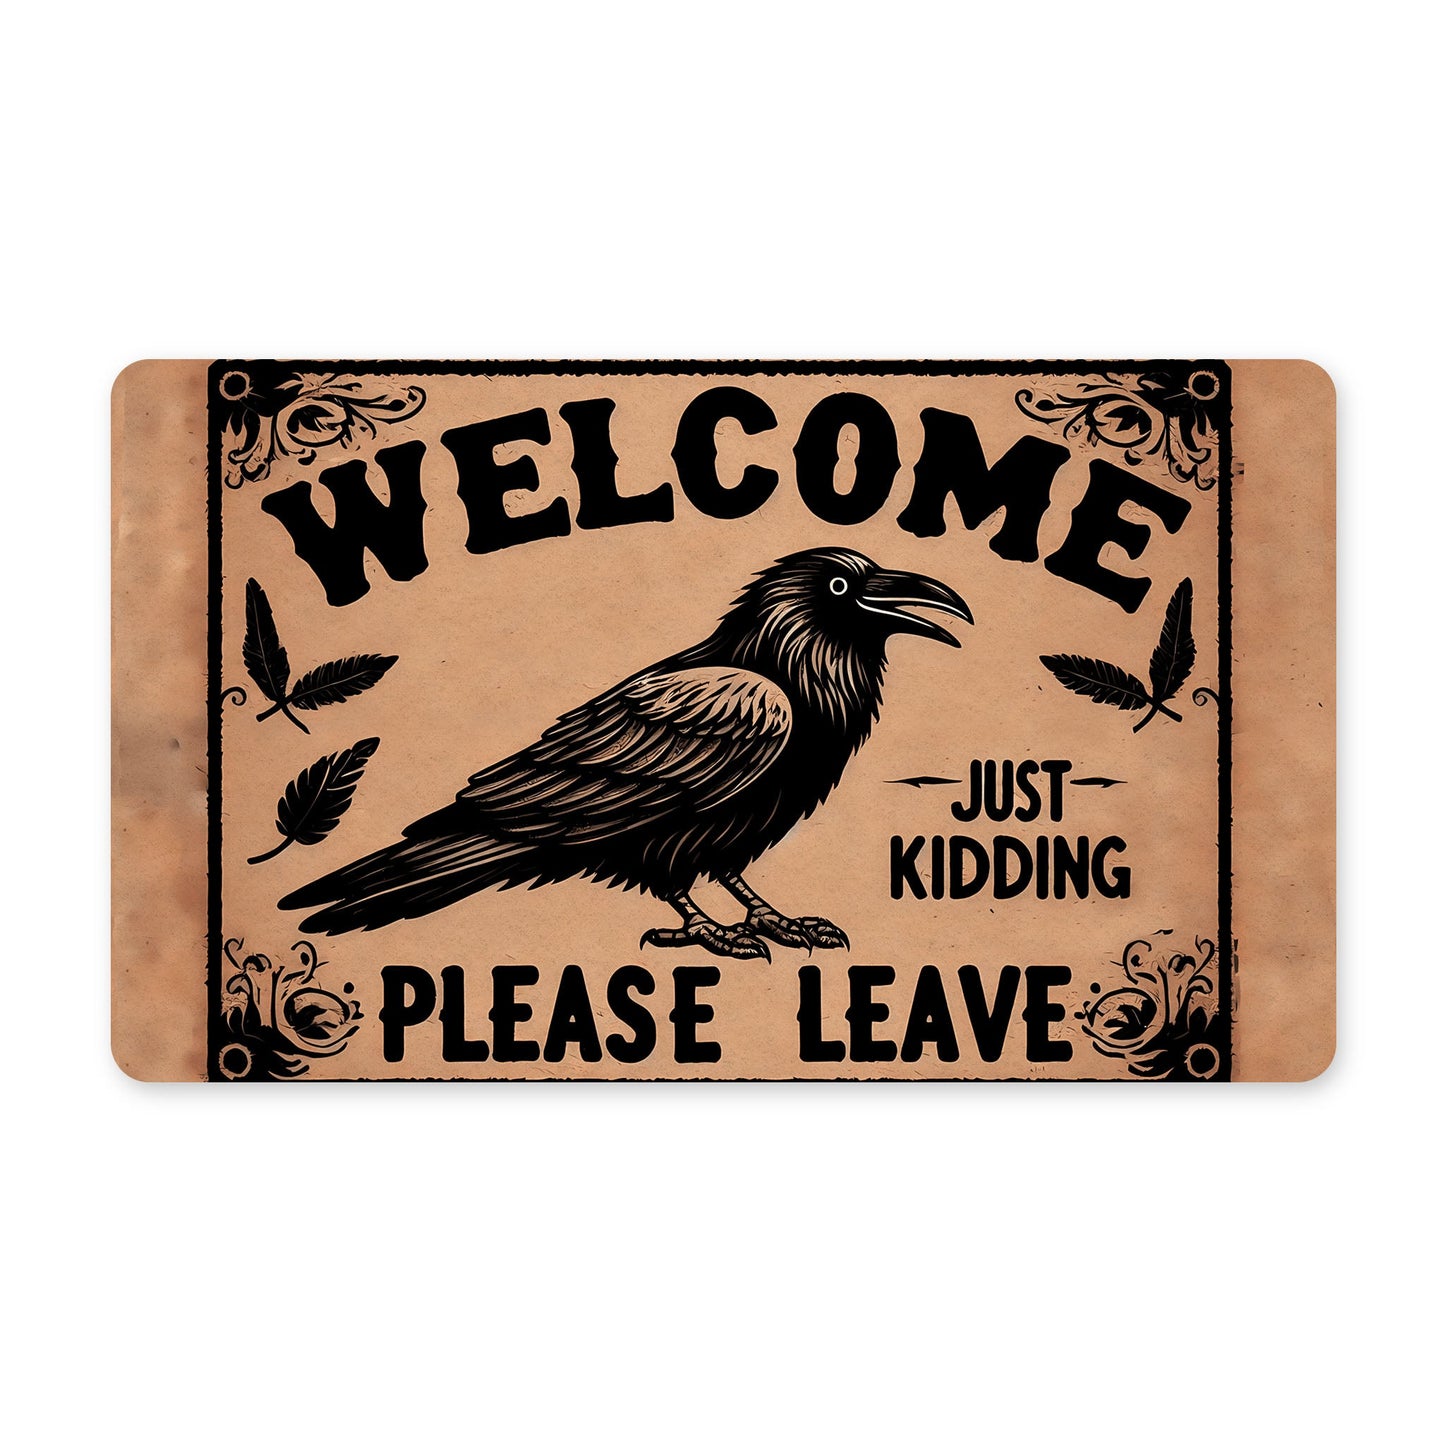 Welcome Just Kidding Please Leave Rubber DoormatdoormatsVTZdesigns30x18Whitedoor matemofunny